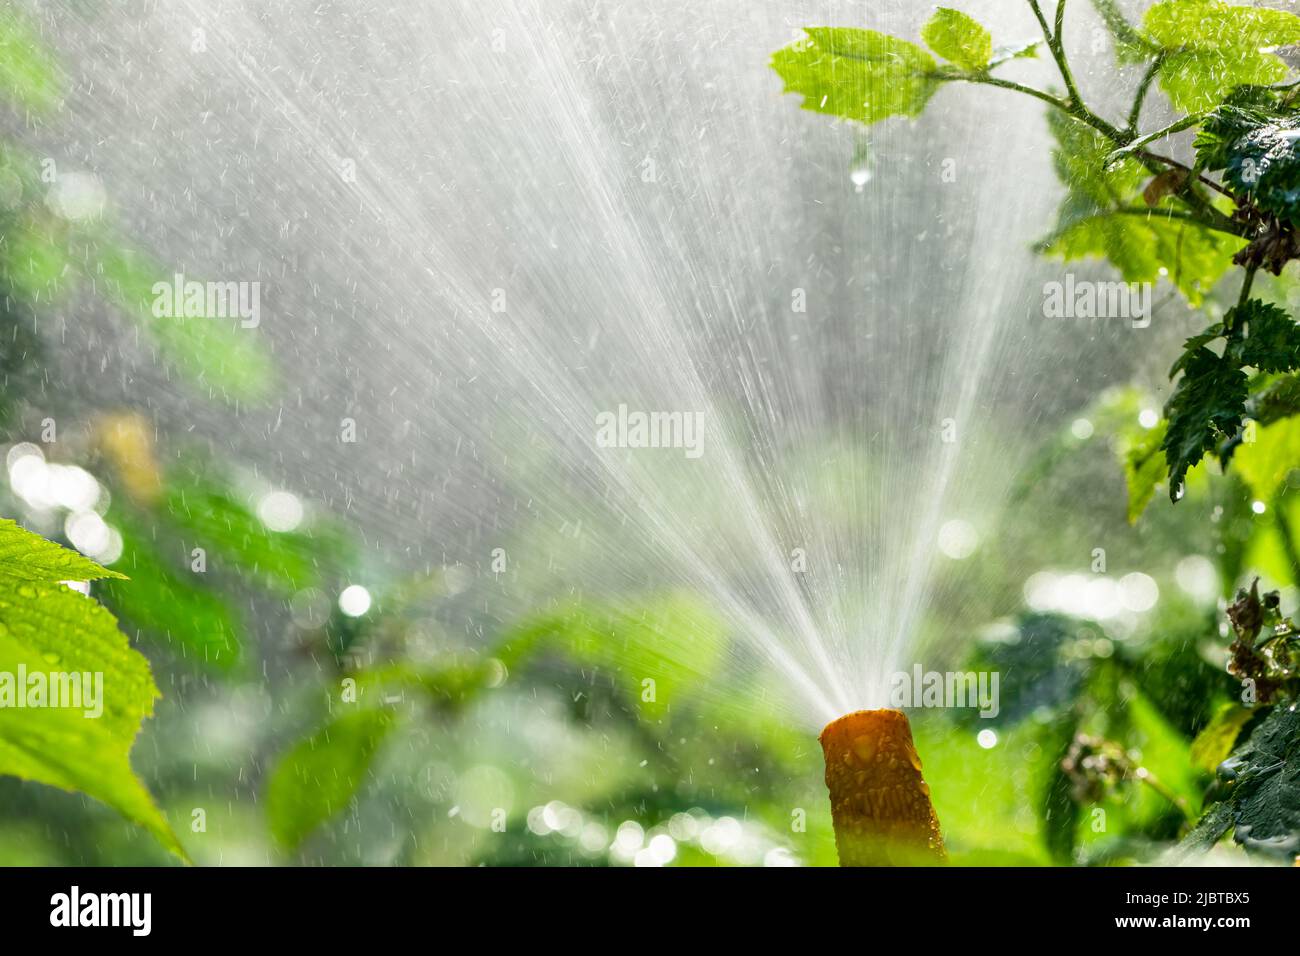 Irrigation sprinkler spaying water irrigating summer garden Stock Photo